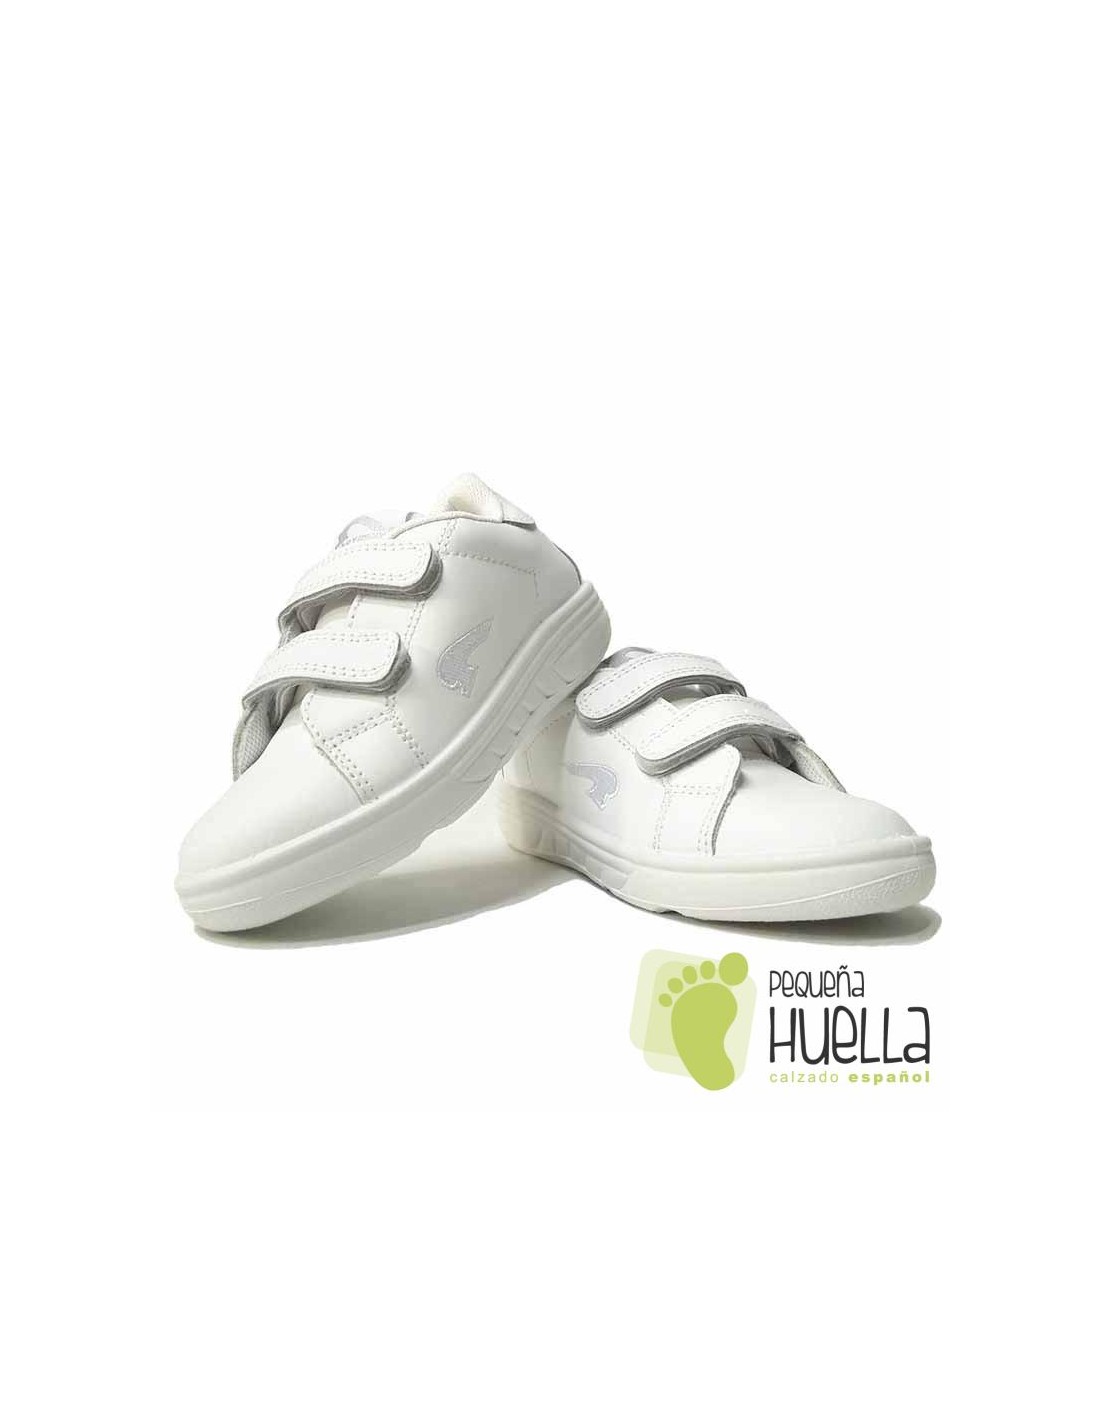 Comprar zapatillas deportivas blancas para chicos en Madrid Online